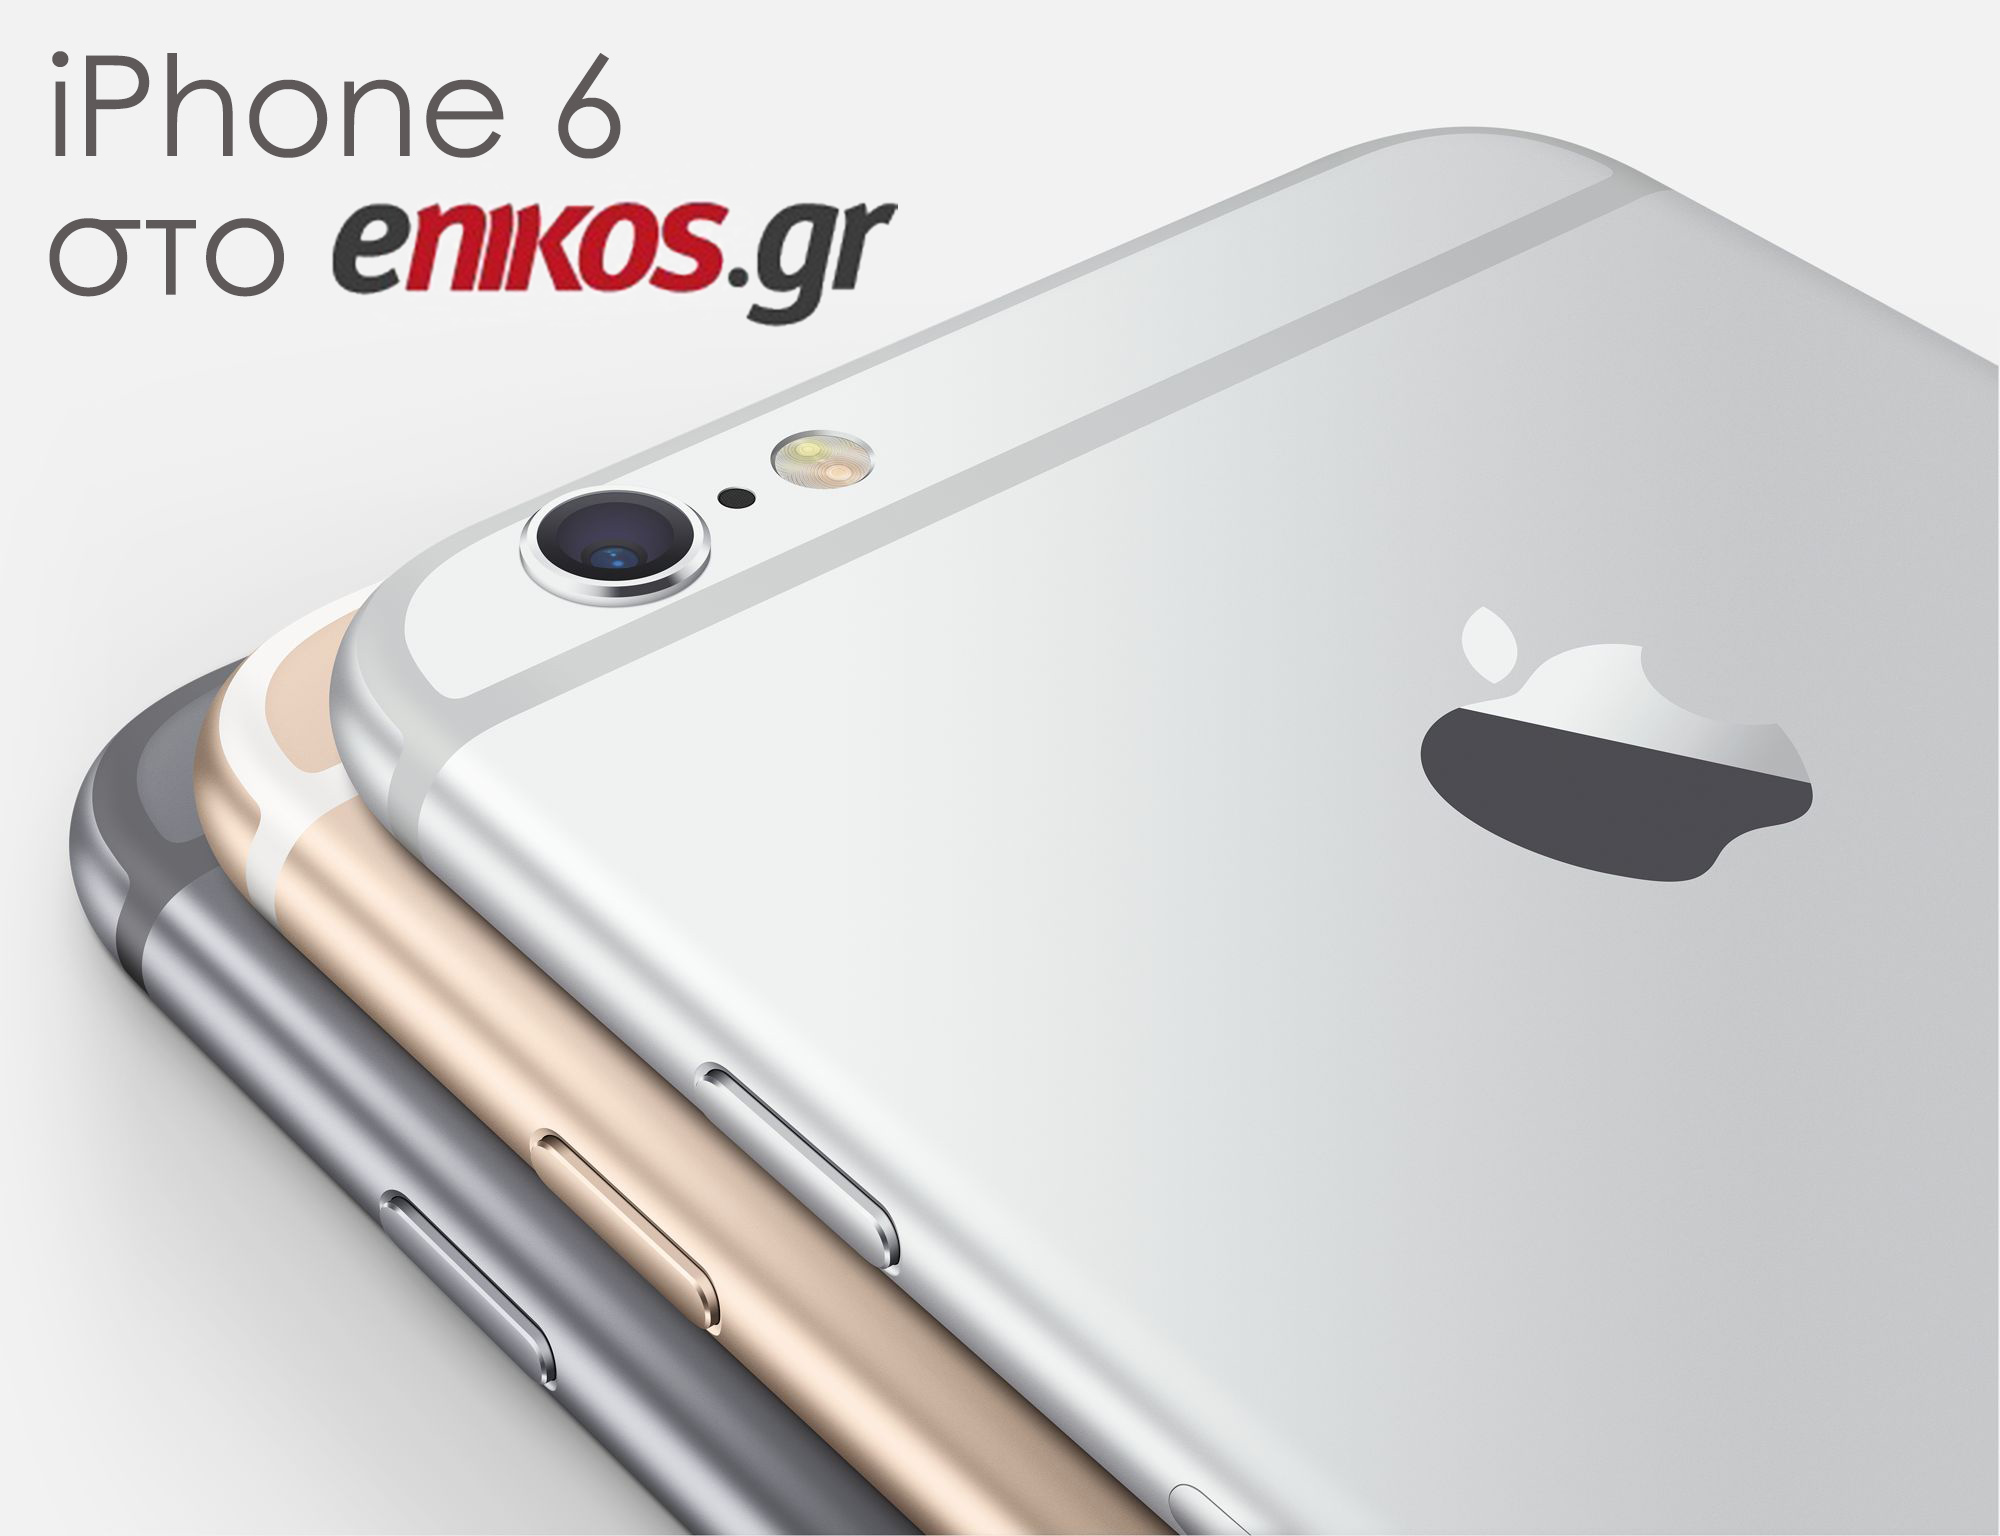 Σε λίγη ώρα ο νικητής του iPhone 6 από το enikos.gr